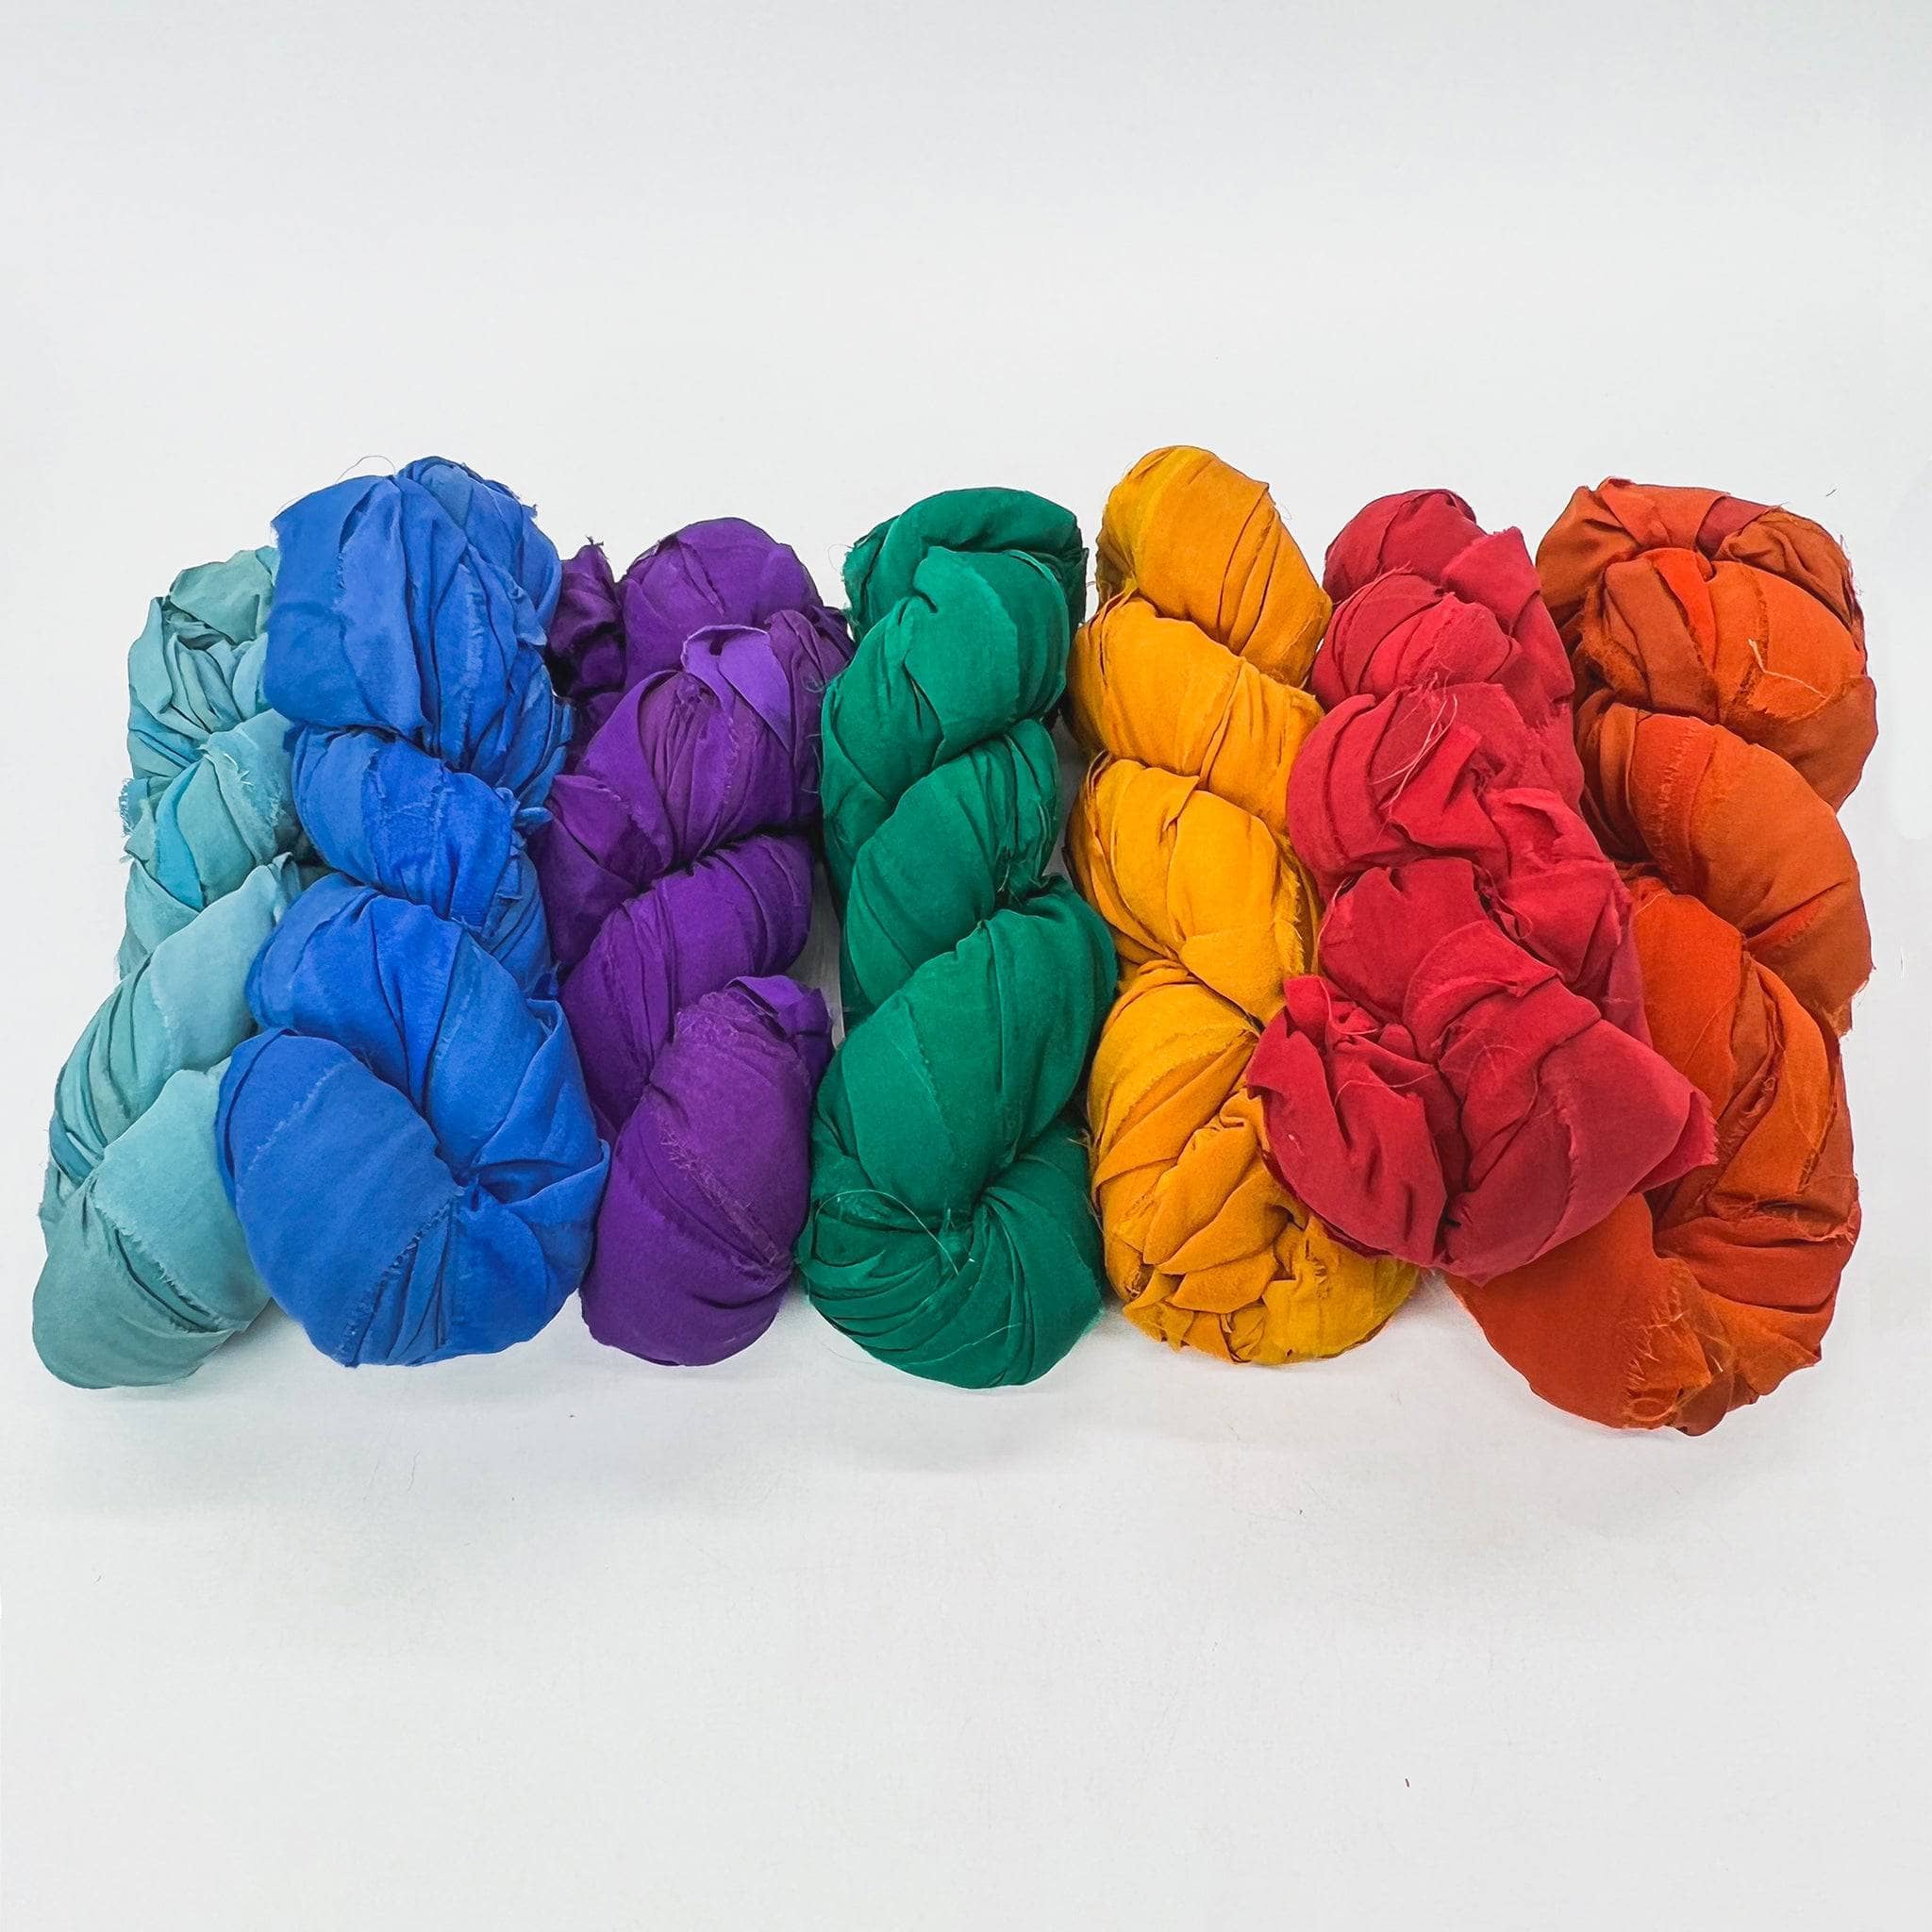 100gm Chiffon ribbon yarn Weaving Knitting Crochet Fiber crafts Jewelry (55  yds)